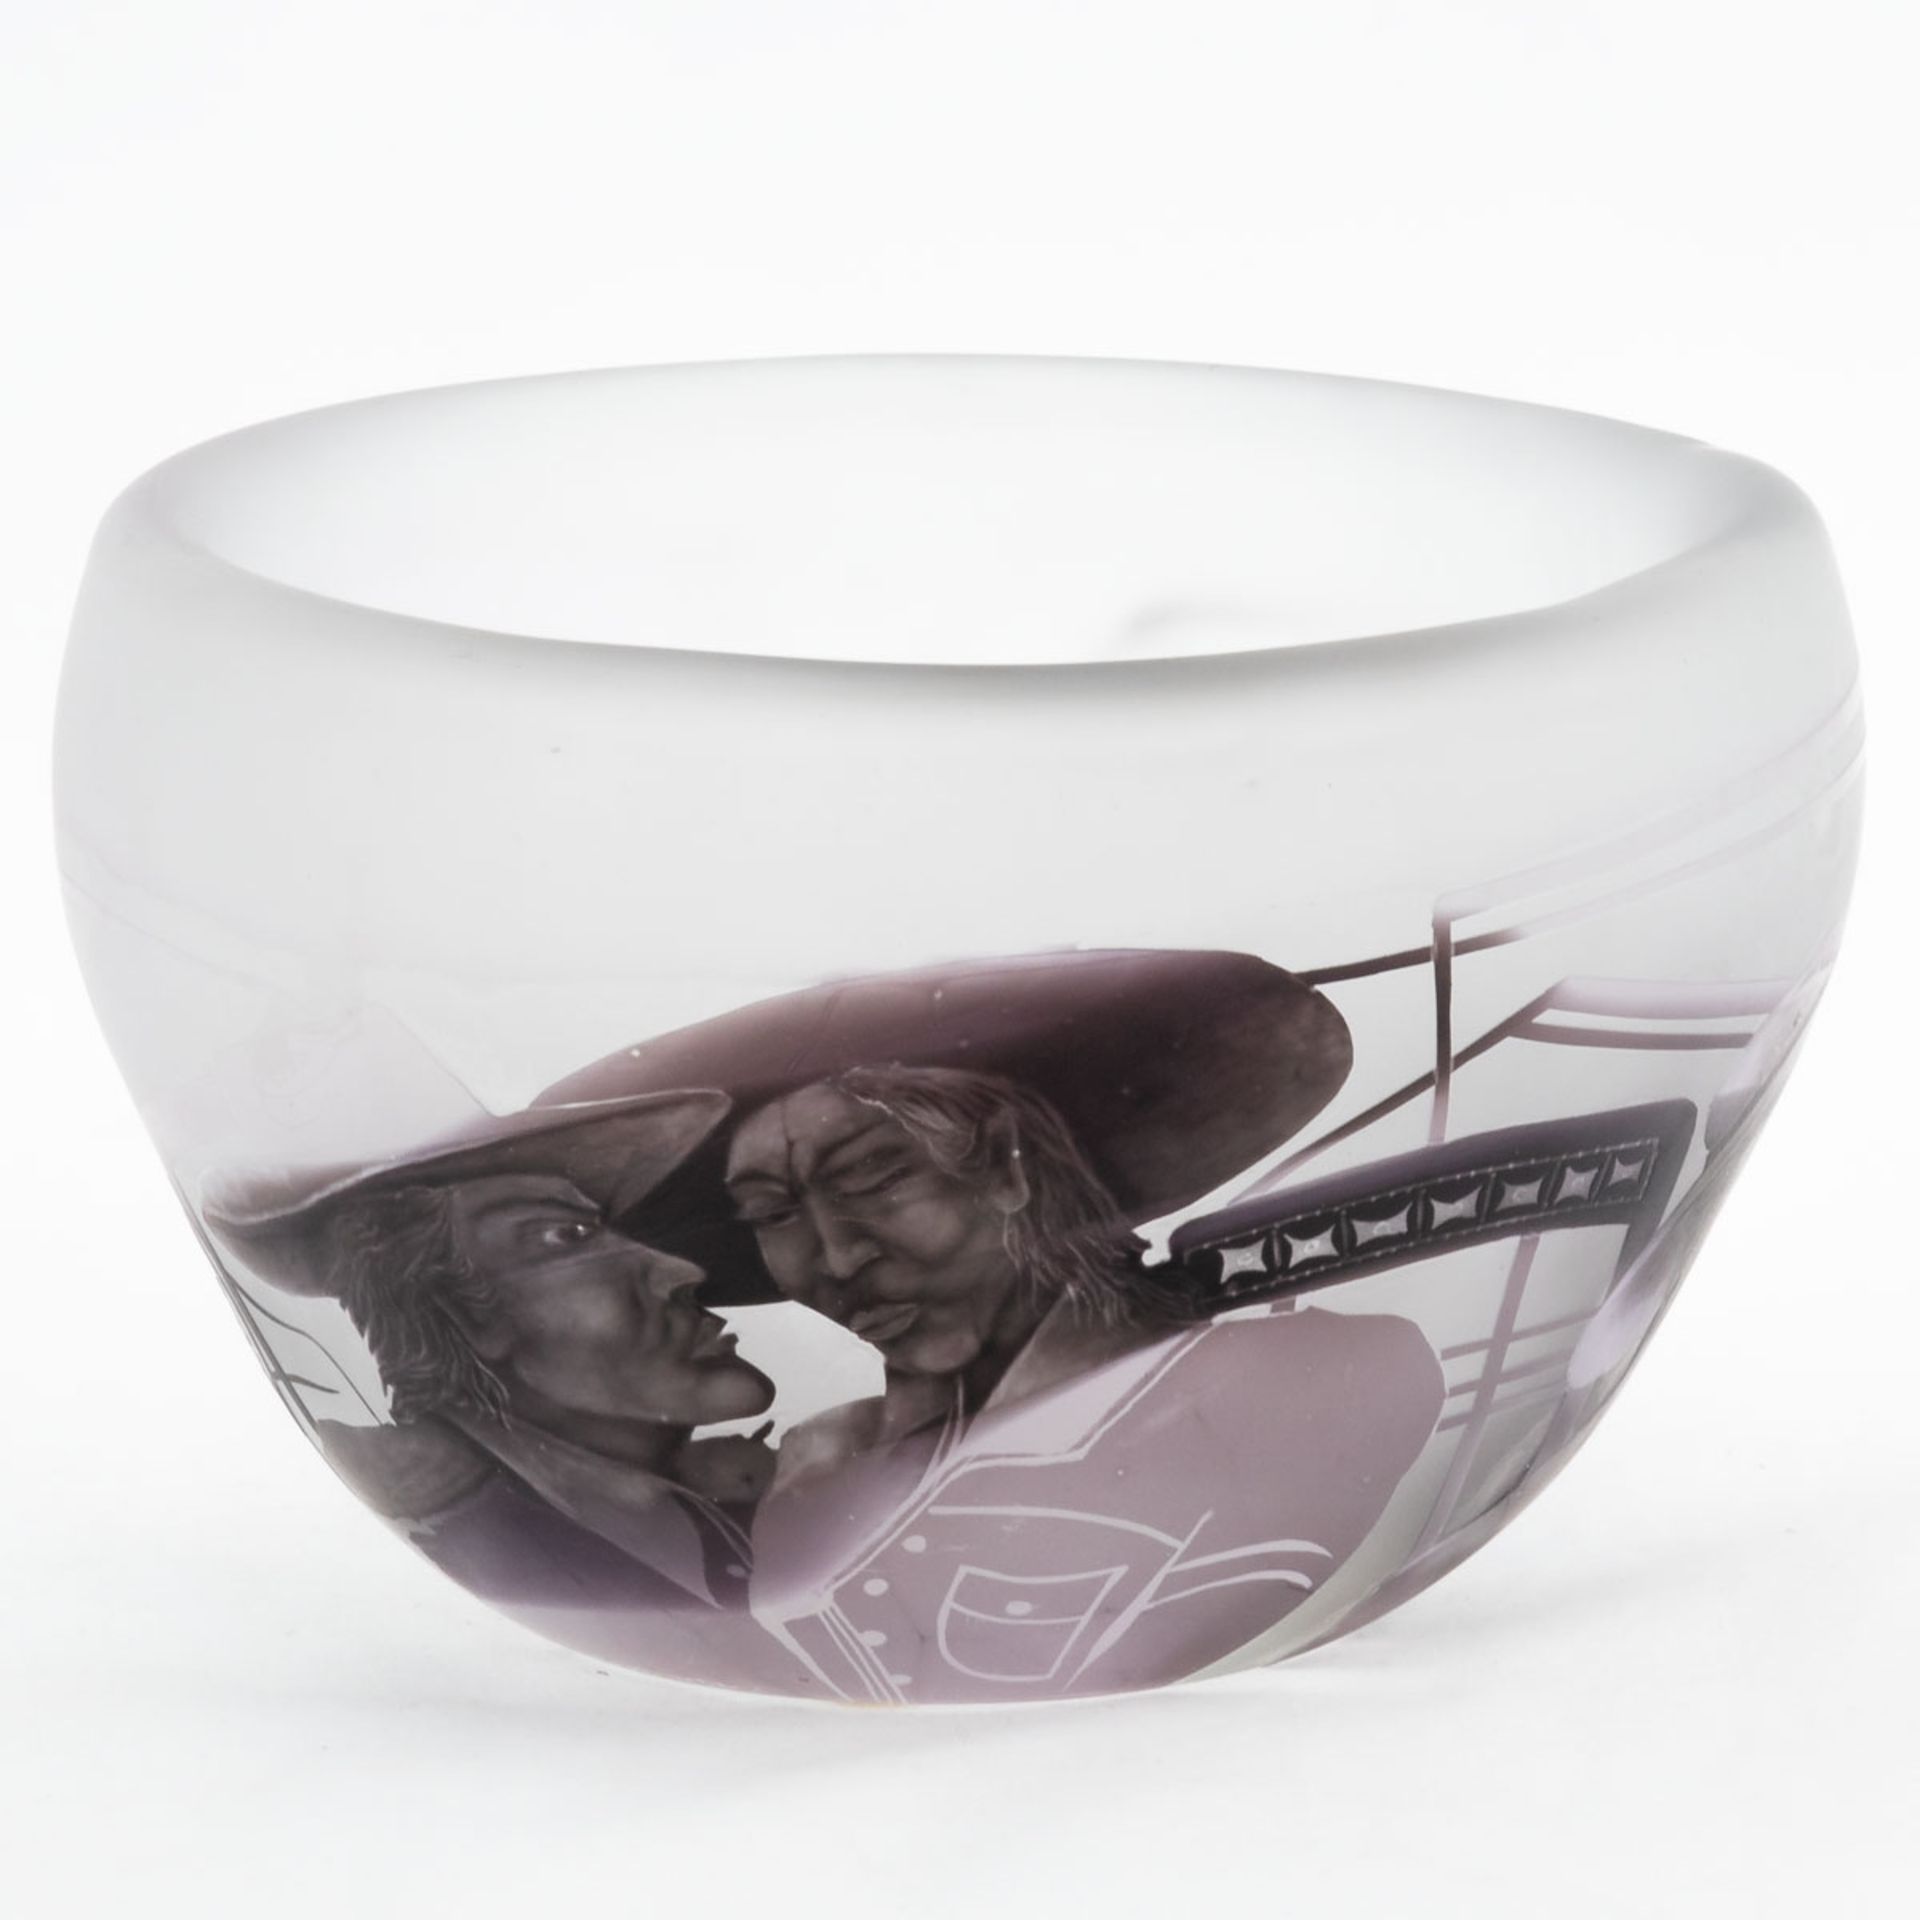 Schale - Studioglas - Magischer Realismus Stanislaw Borowski, 1986. Farbloses Glas, mit mehrf